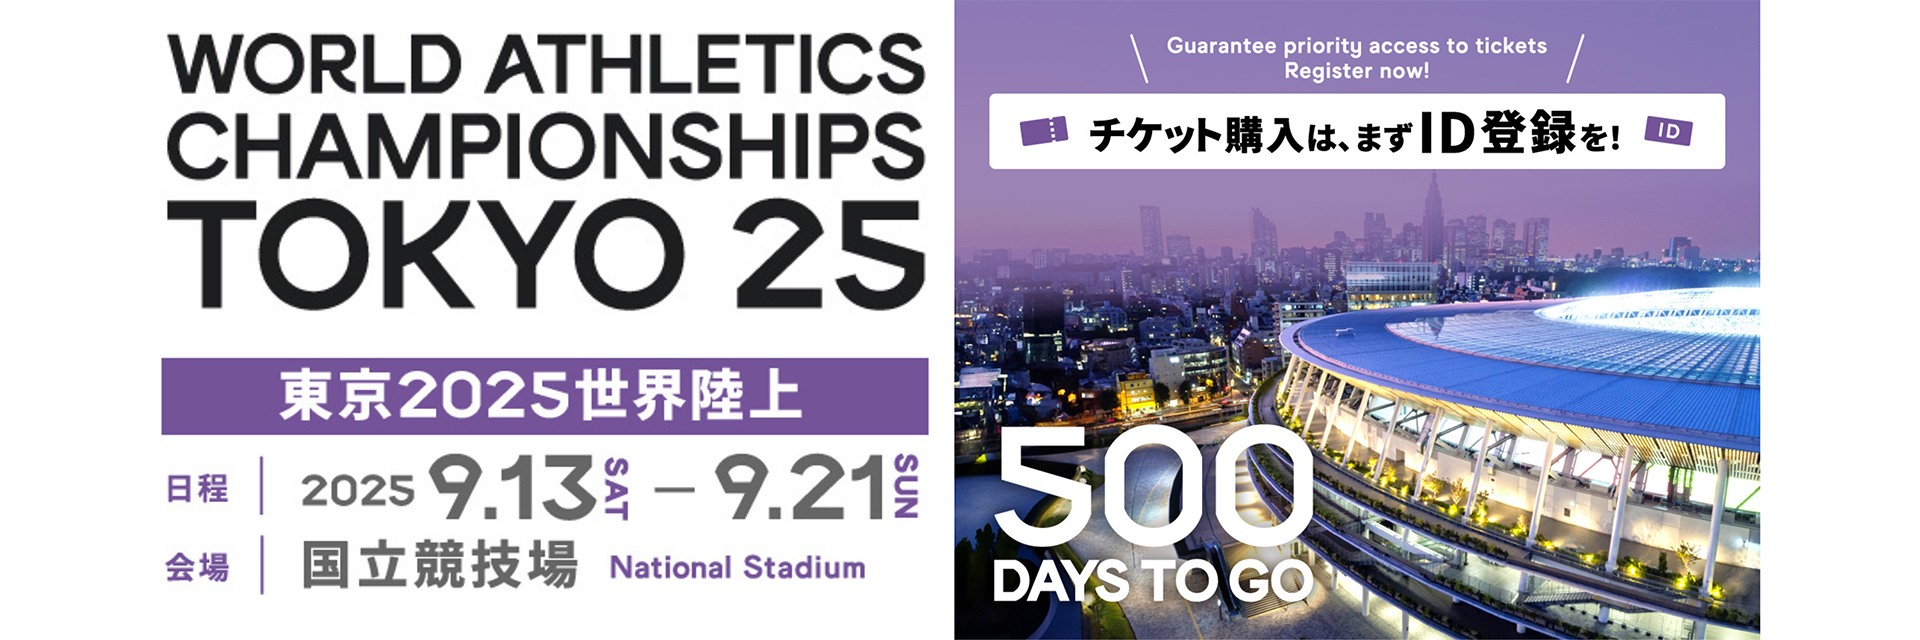 【도쿄 2025 세계 육상 재단】 500 Days to Go! 개최까지 앞으로 500일!